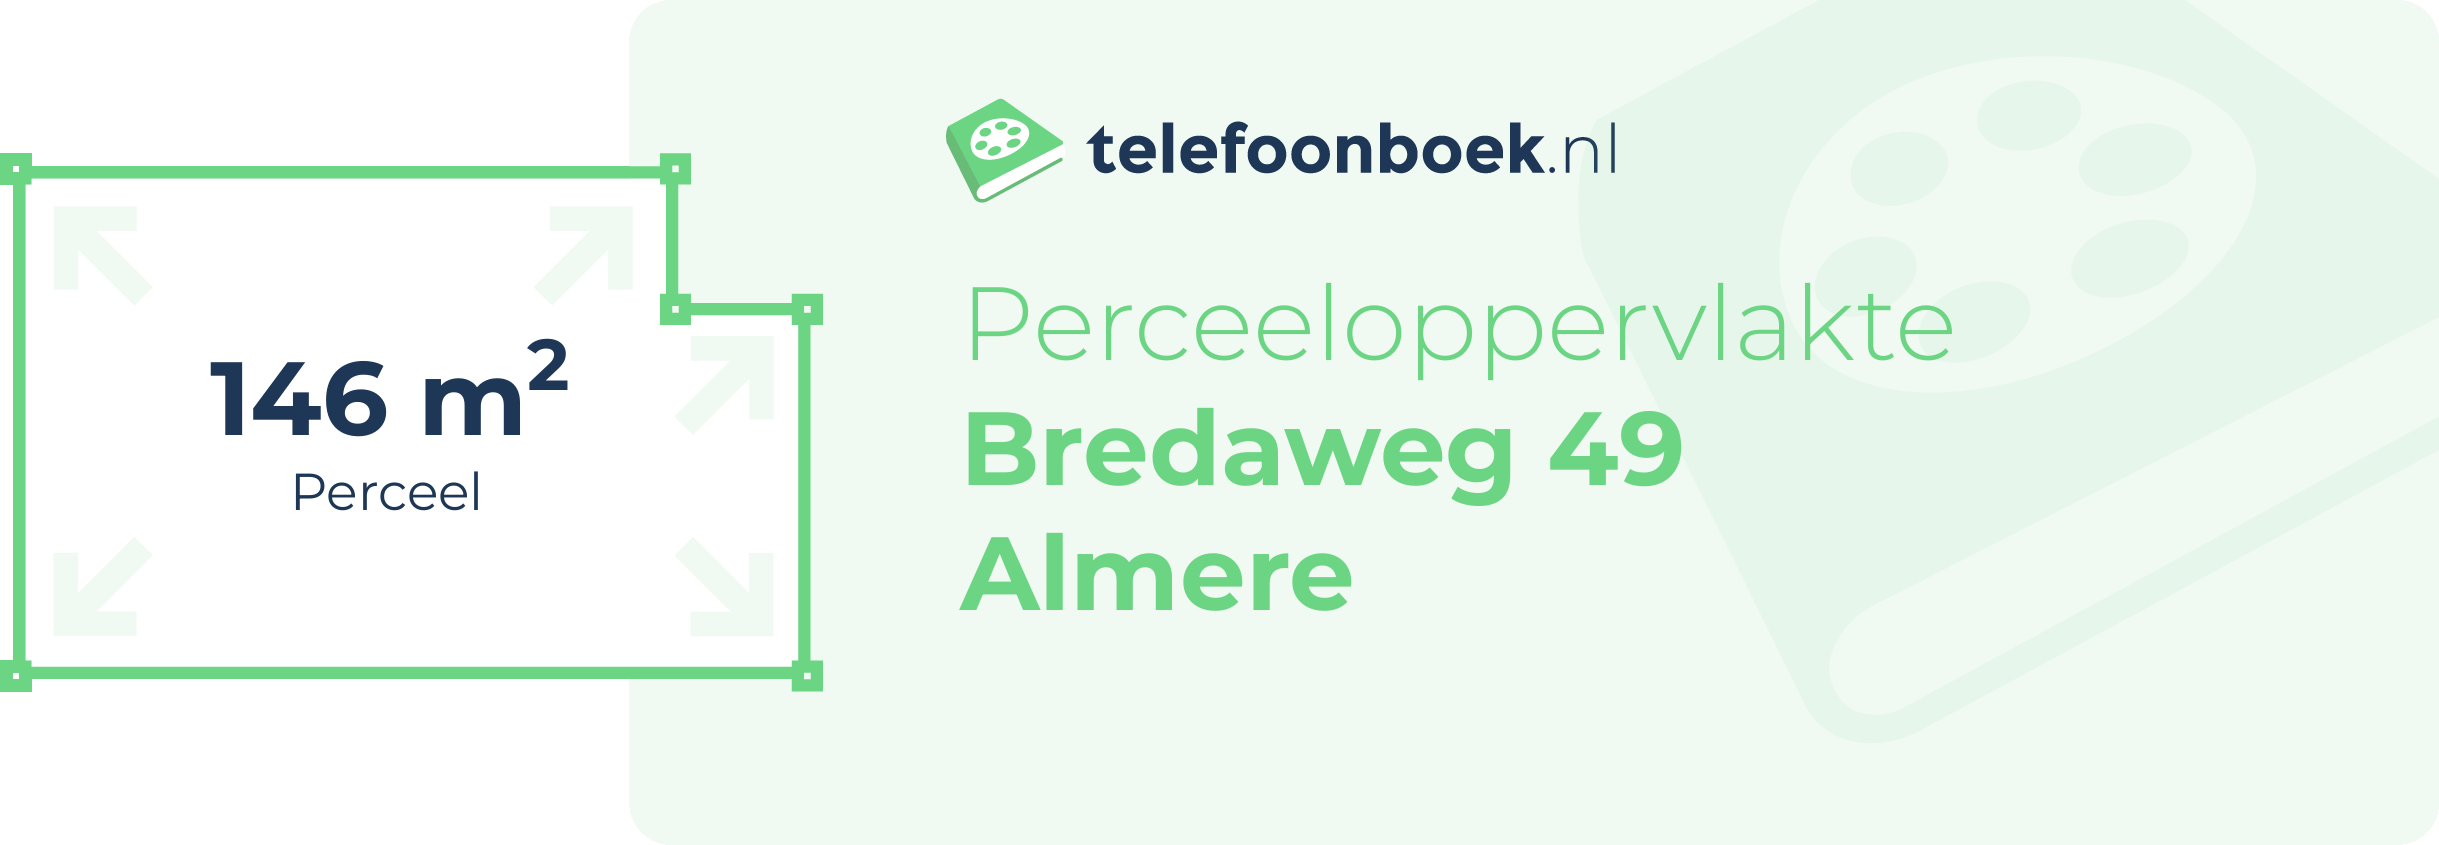 Perceeloppervlakte Bredaweg 49 Almere